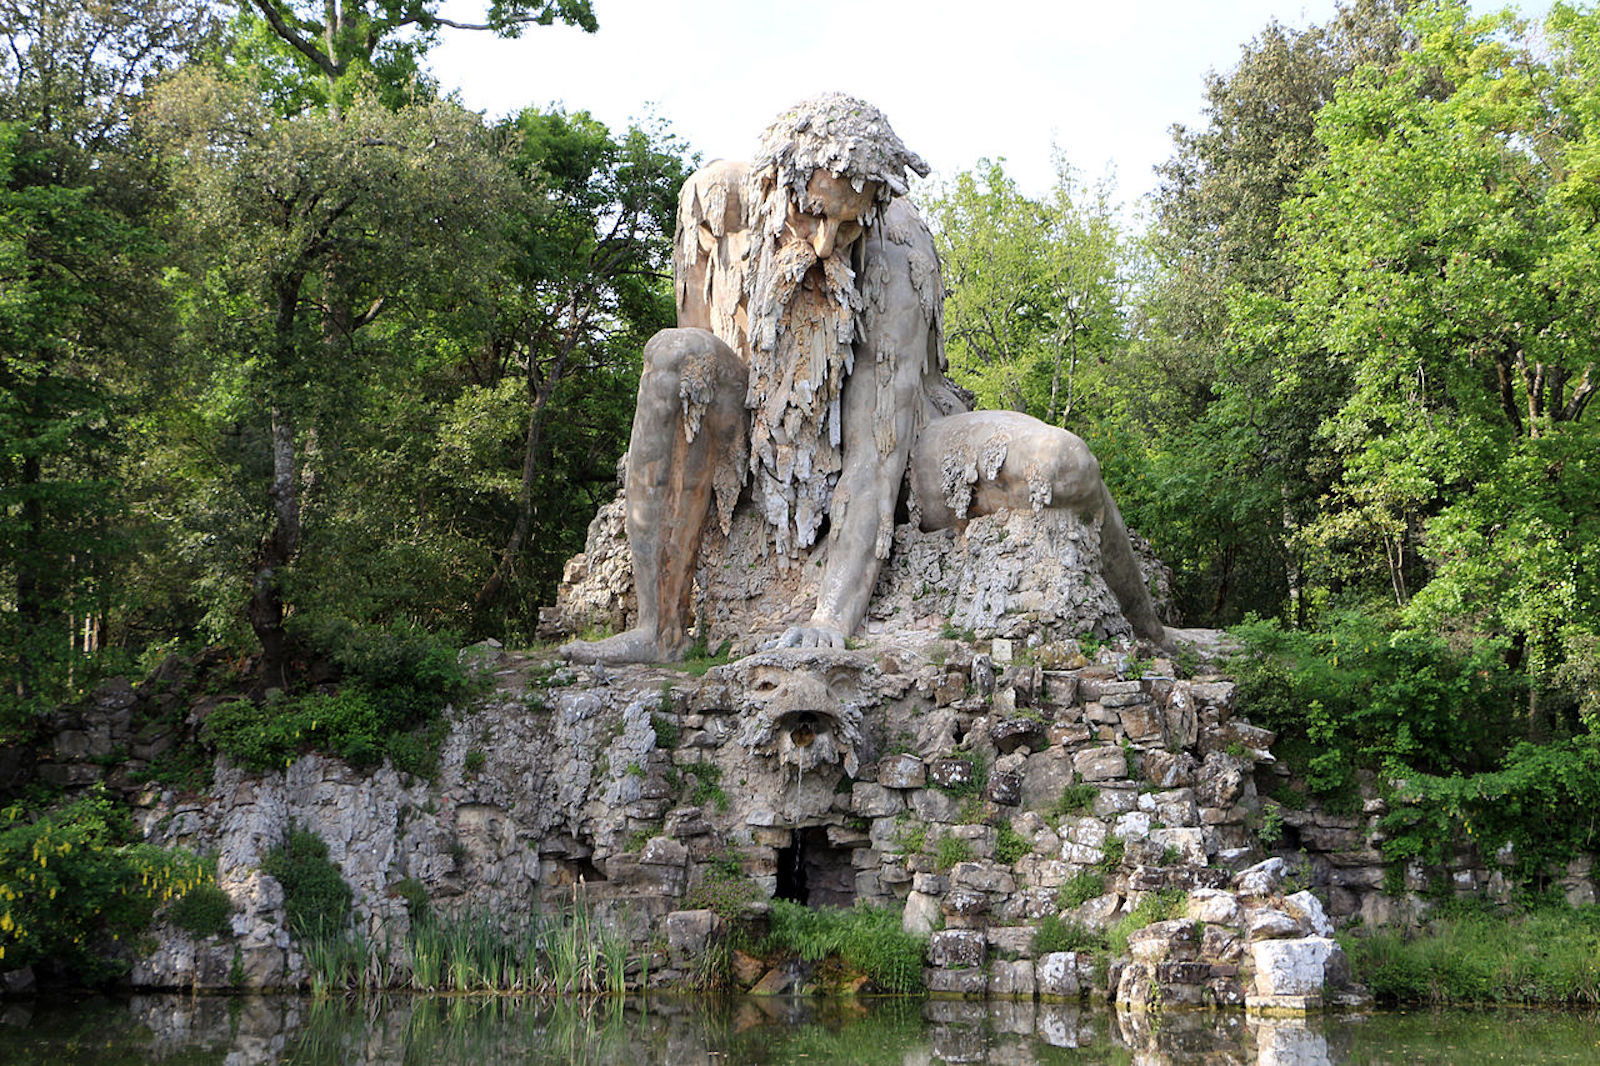 Il Colosso dell'Appennino di Giambologna nel Parco Mediceo di Pratolino